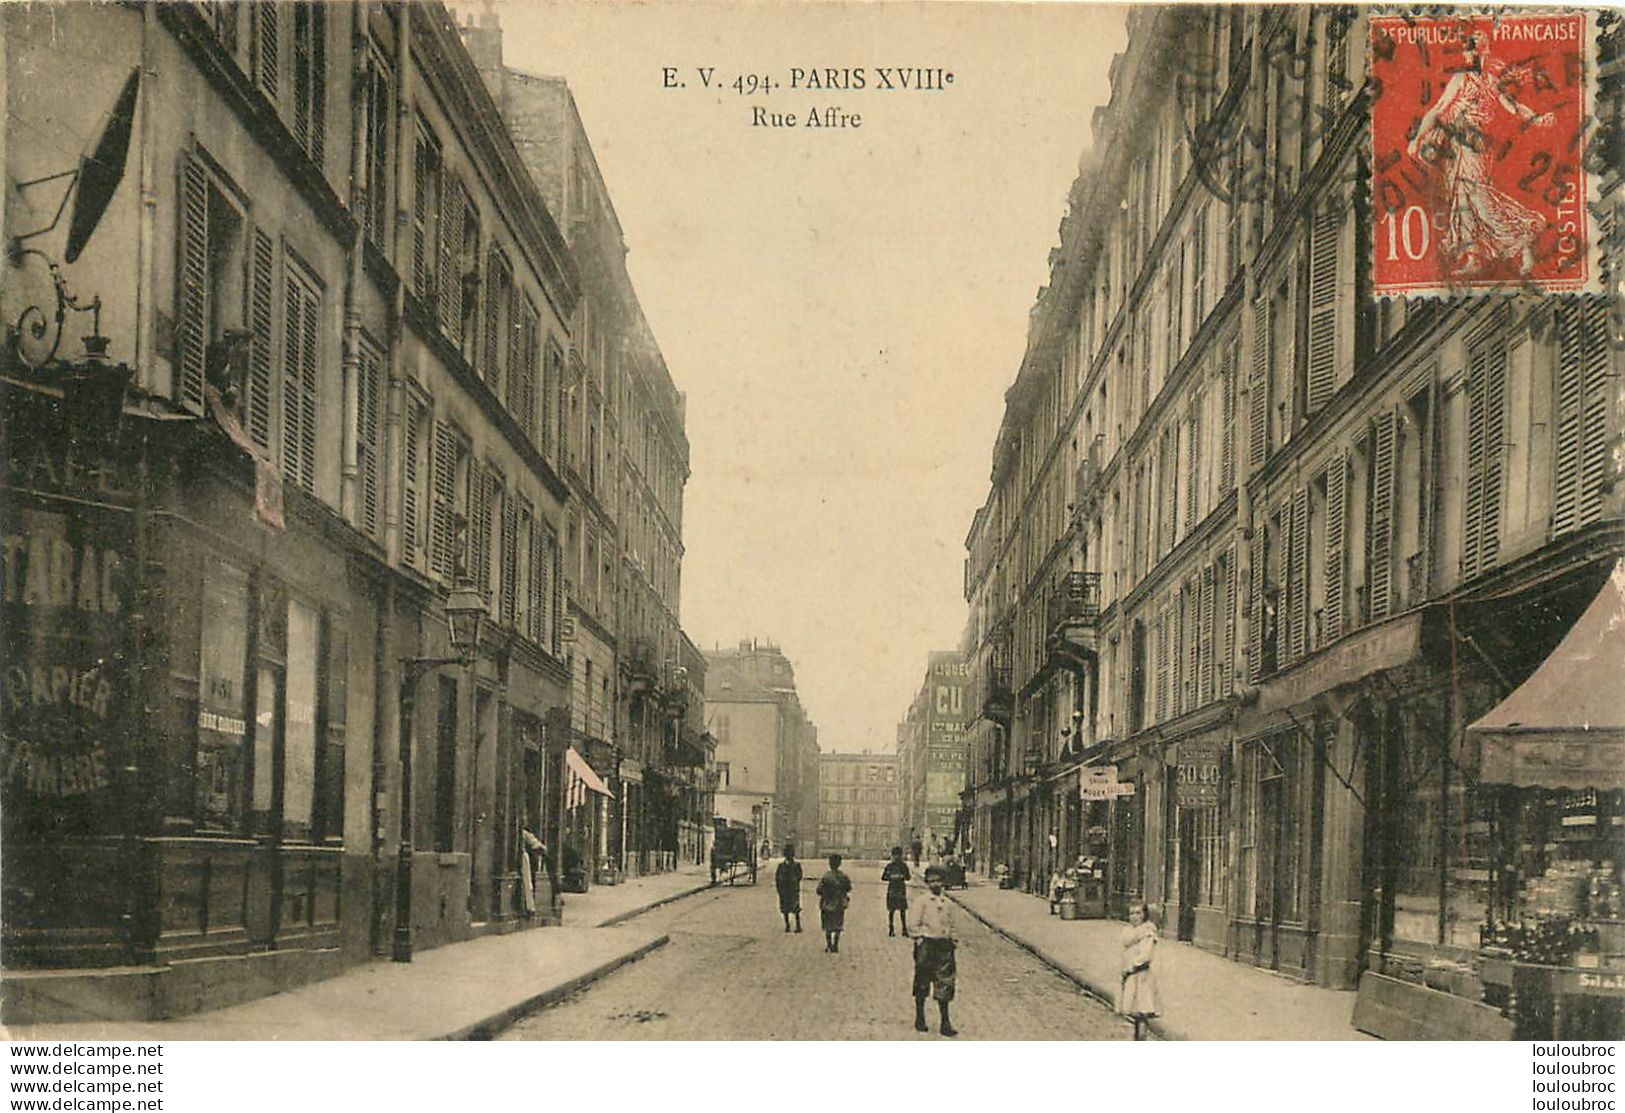 PARIS XVIIIe RUE AFFRE - Arrondissement: 18